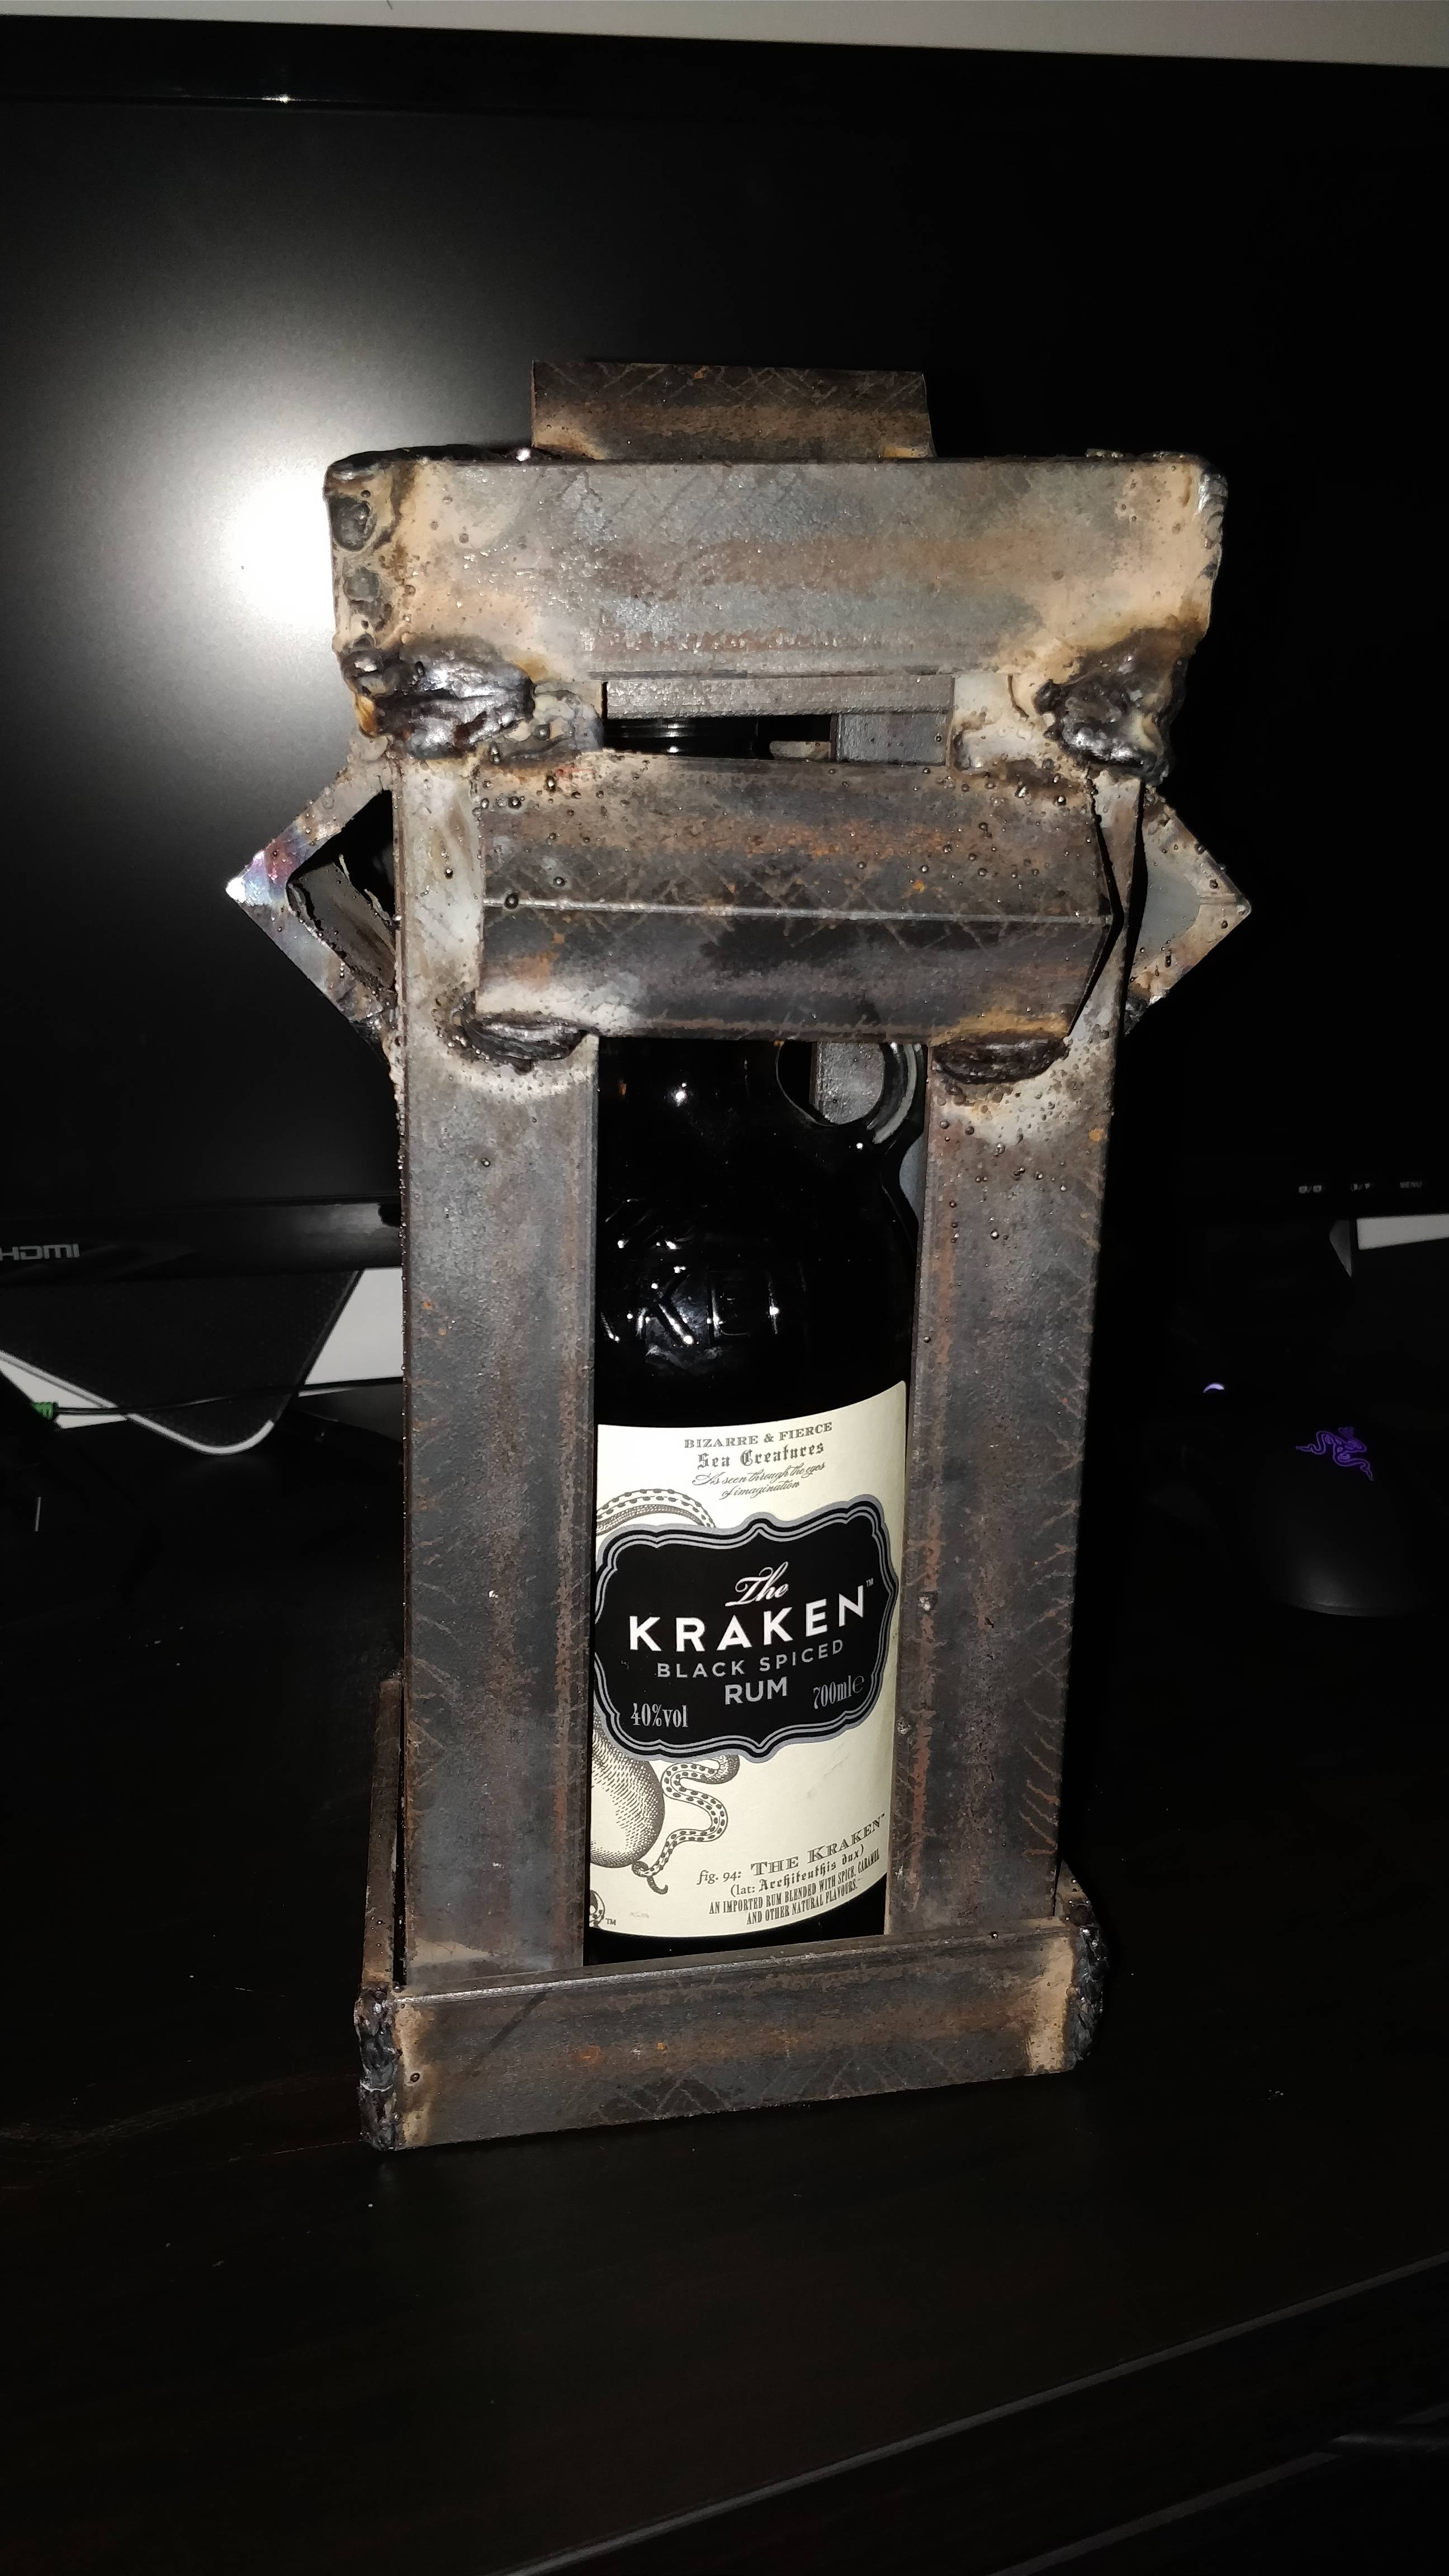 A bottle of Kraken rum wrapped in metal